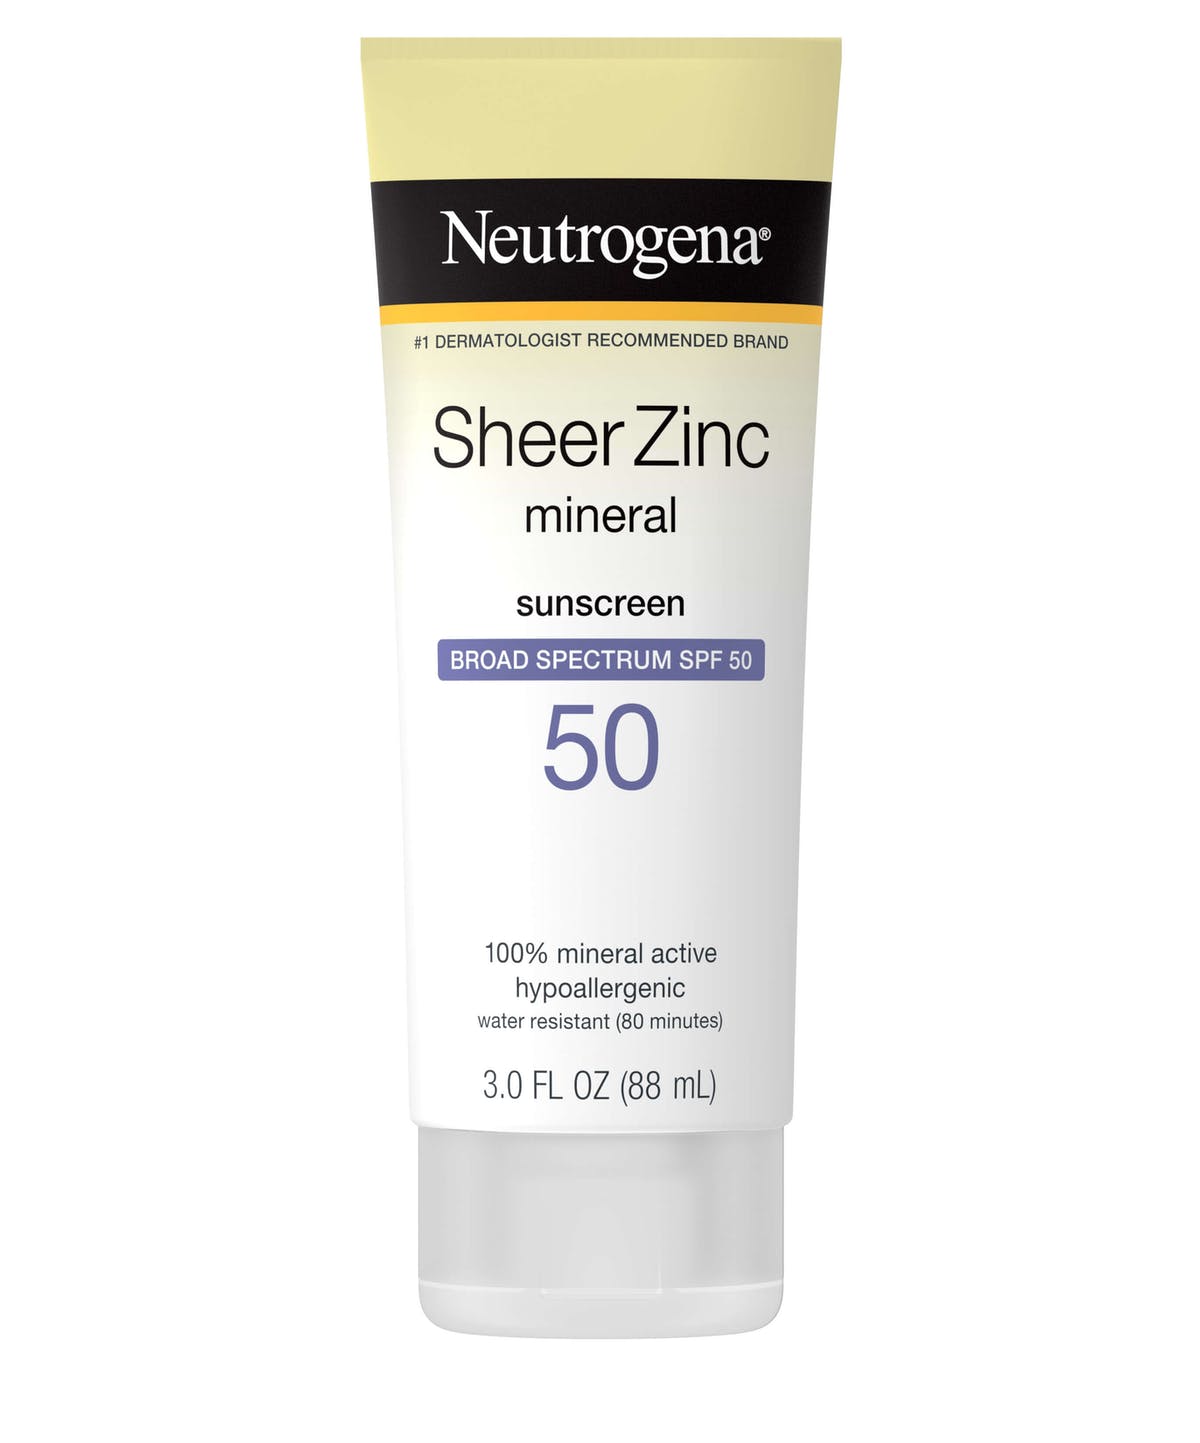 Neutrogena Sheer Zinc Dry Hard, meilleur écran solaire sans danger pour la grossesse